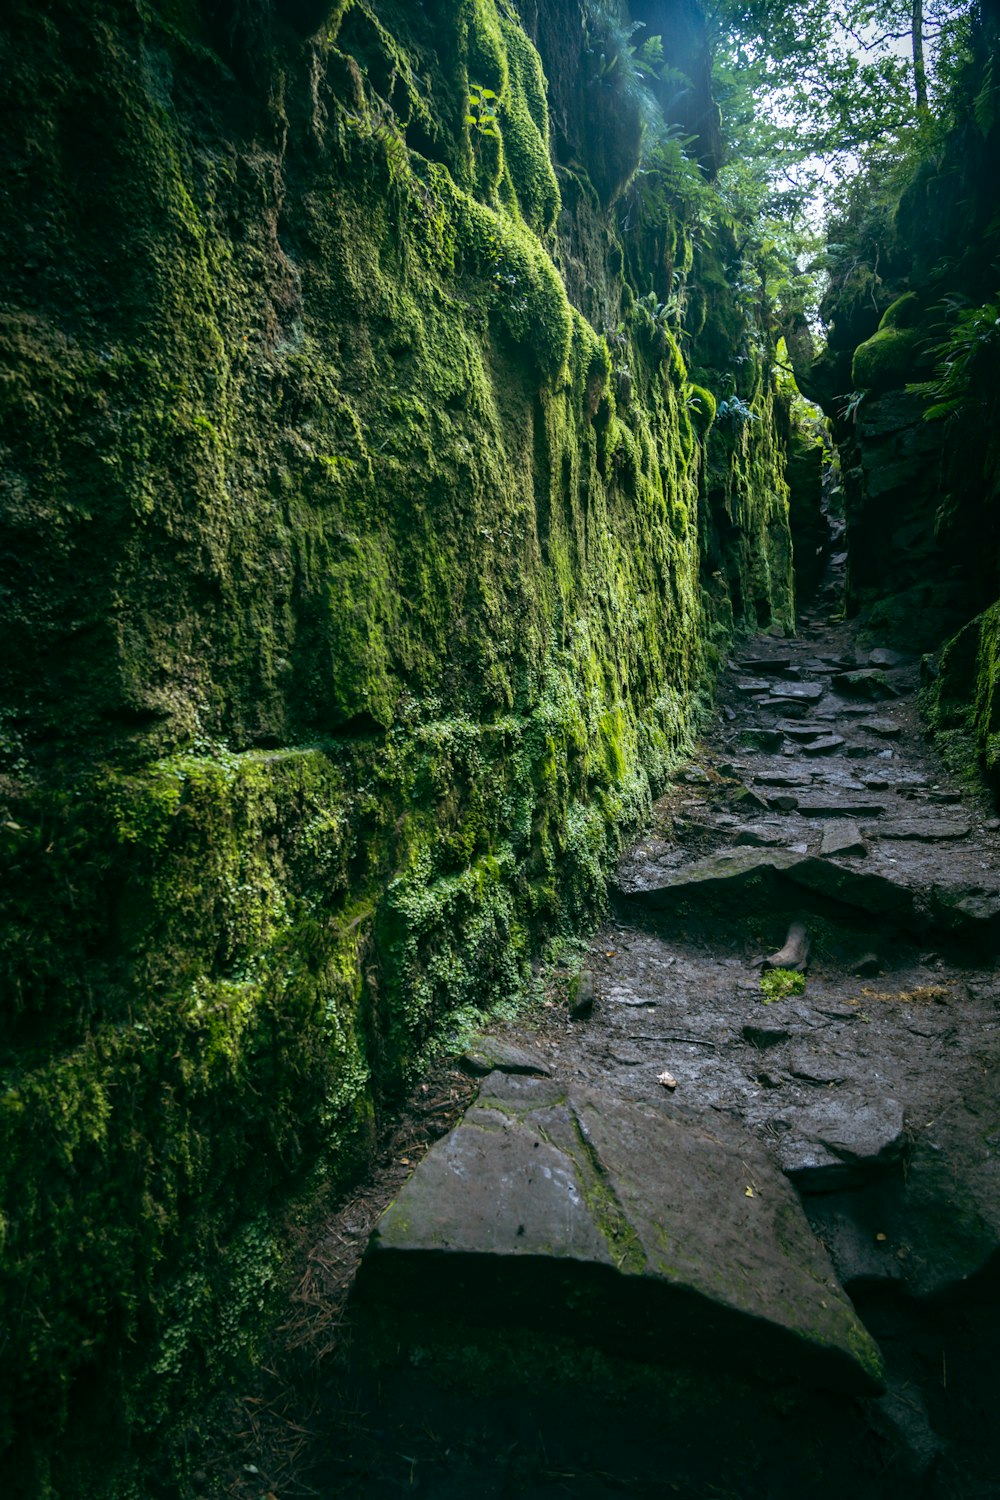 caminho de concreto cinza entre rochas cobertas de musgo verde